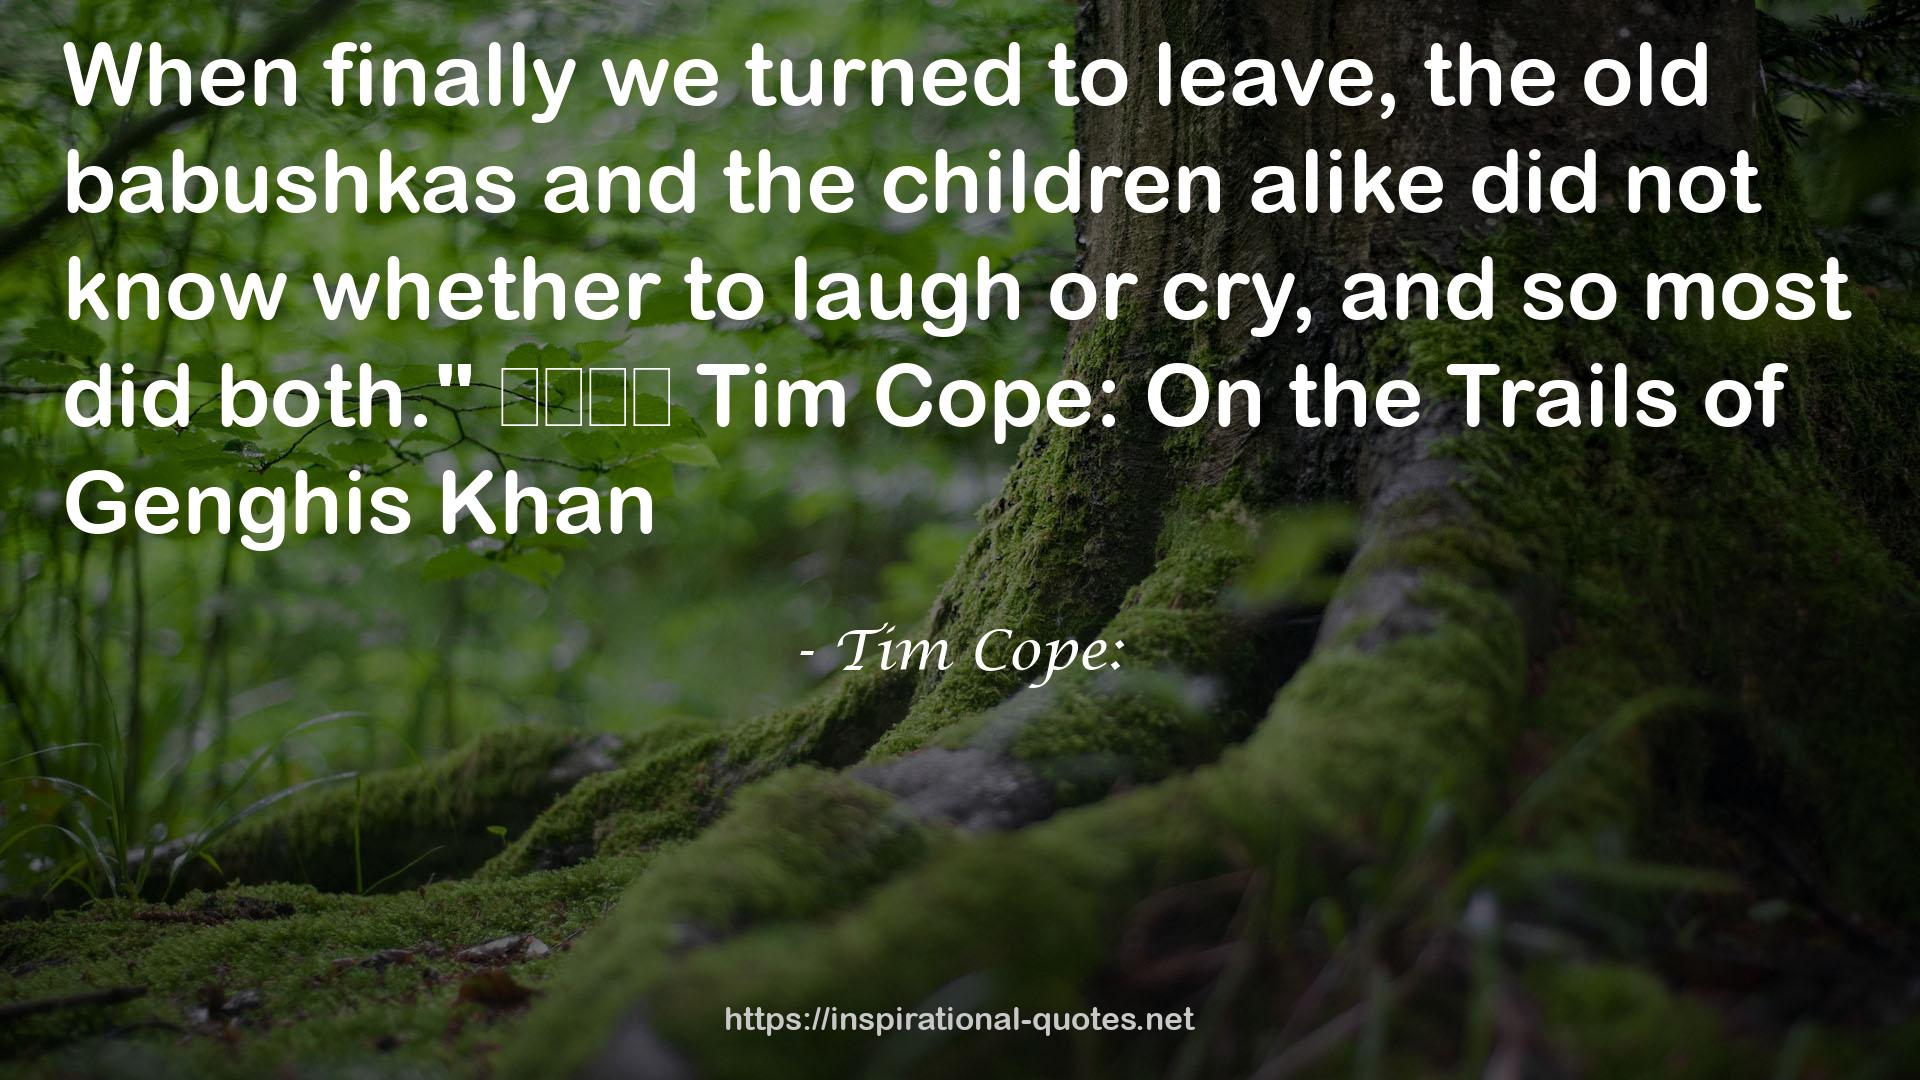 Tim Cope: QUOTES